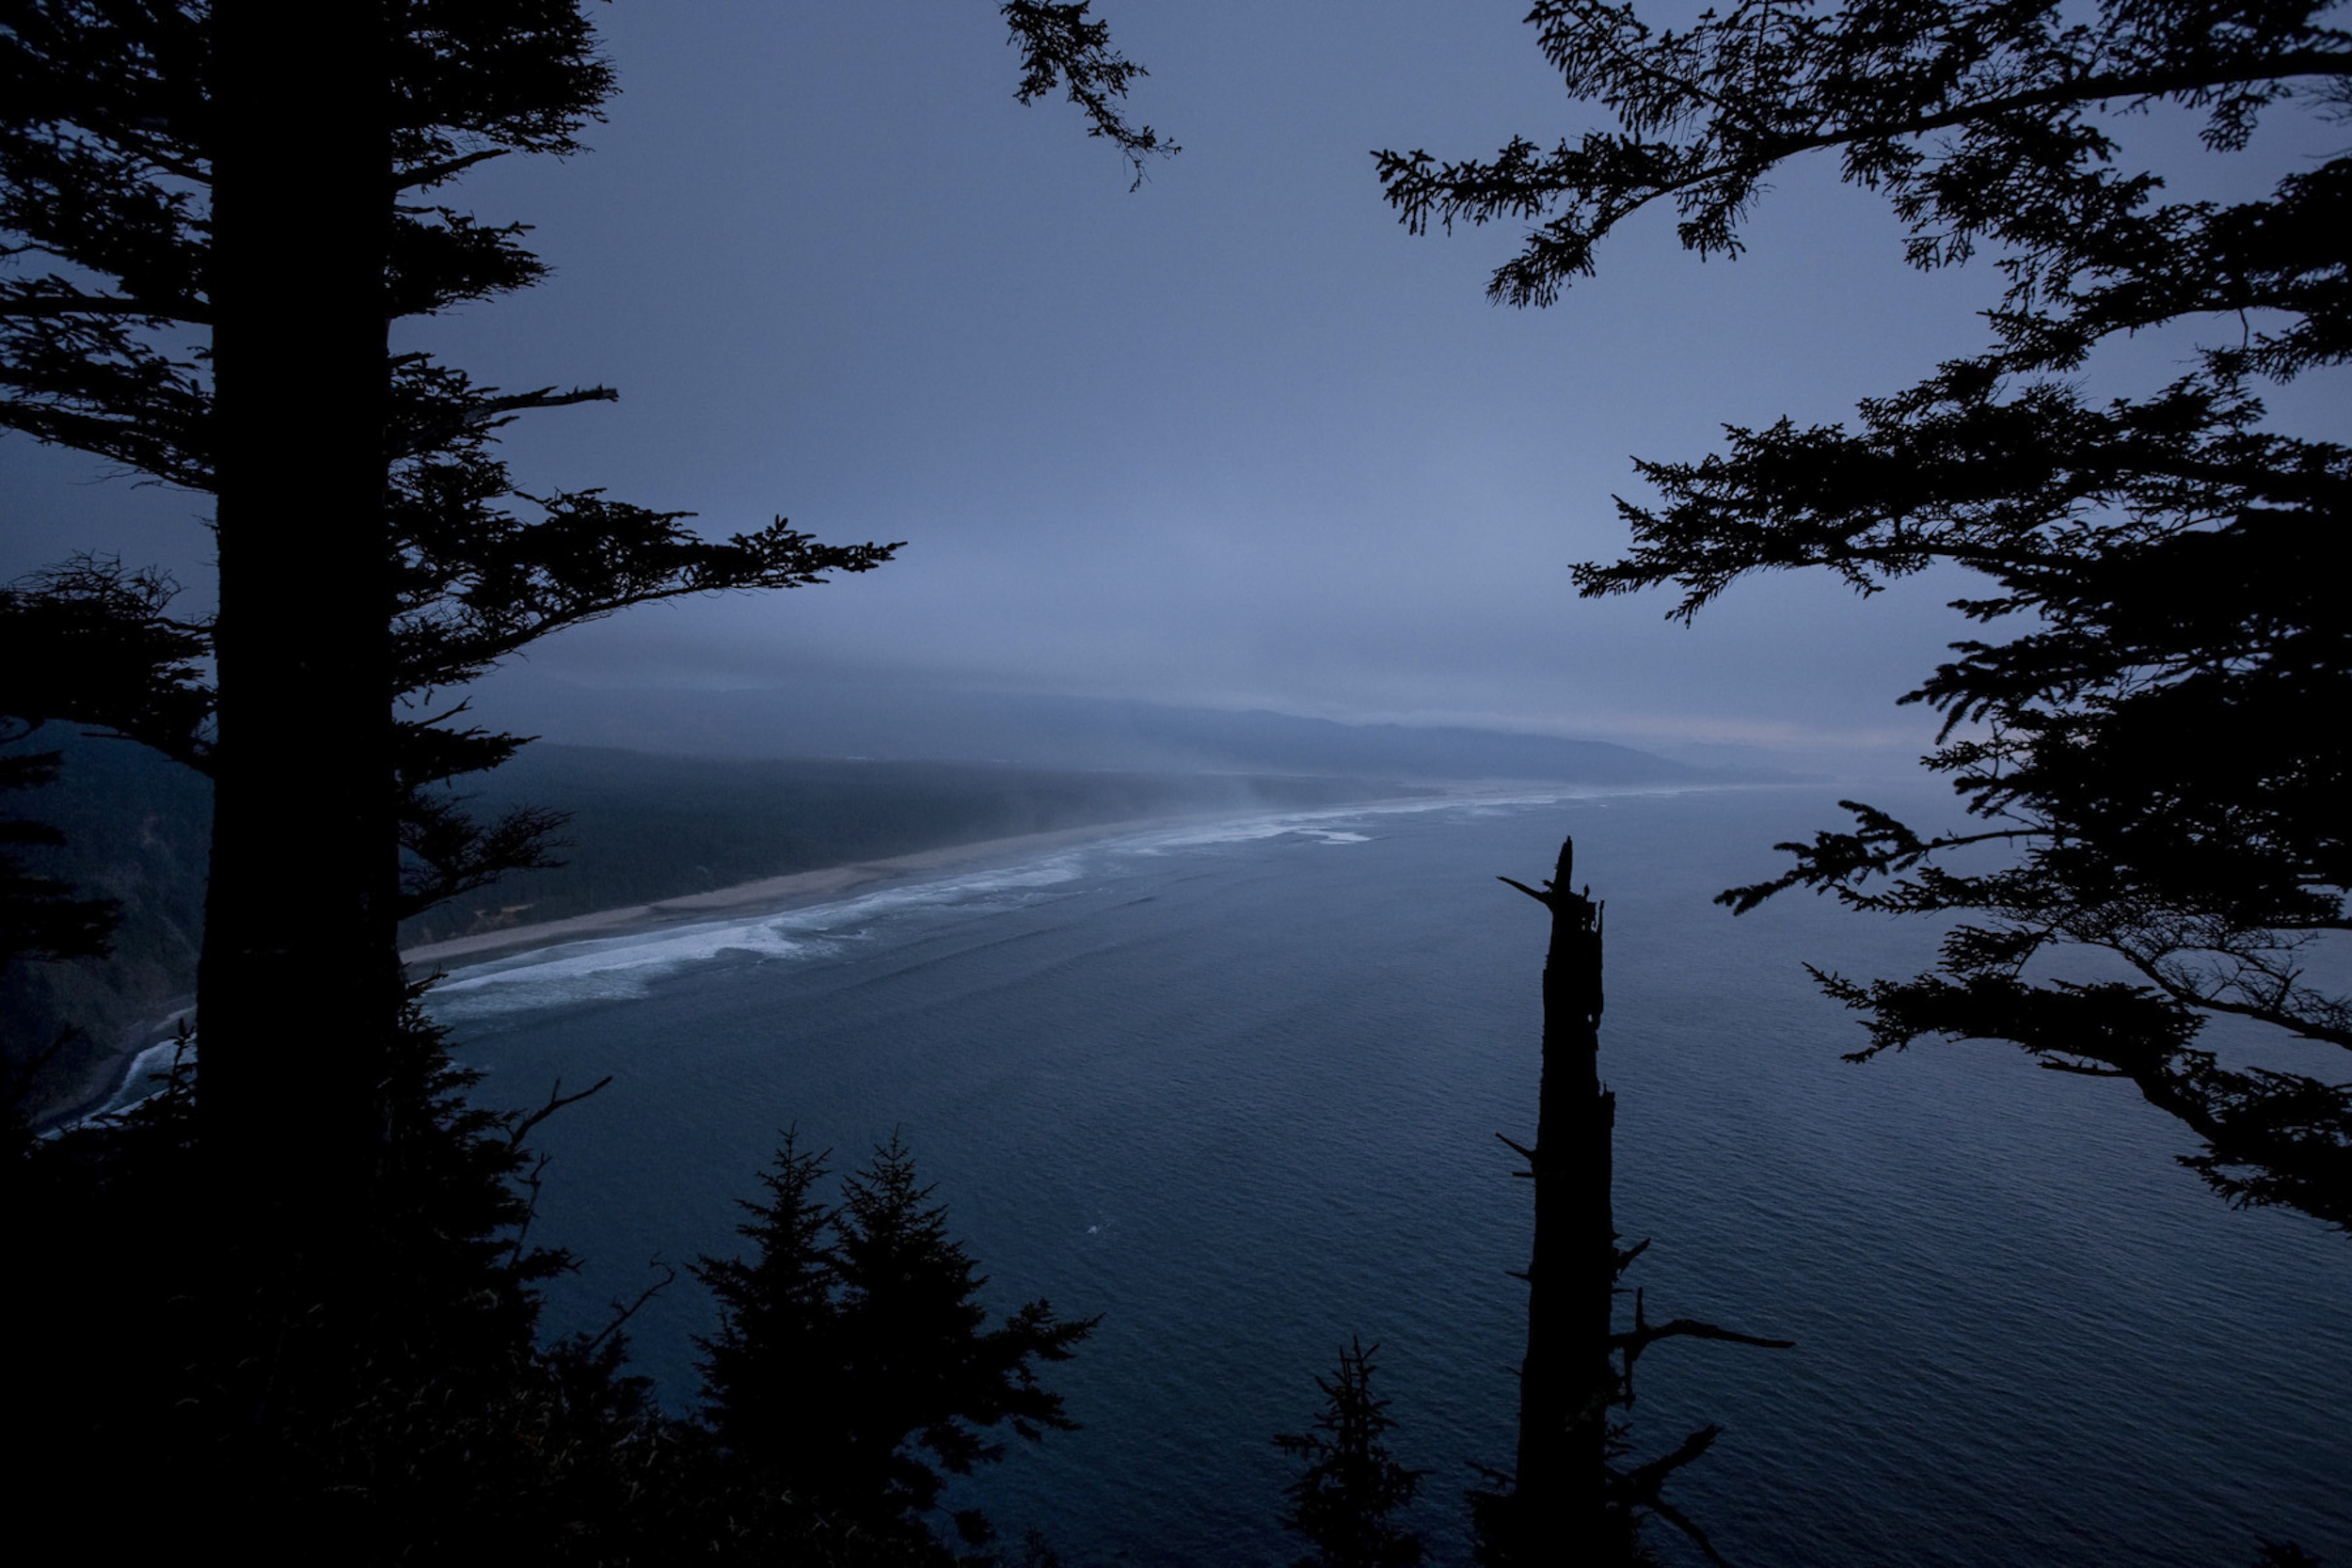  Coast through the trees, Oregon 